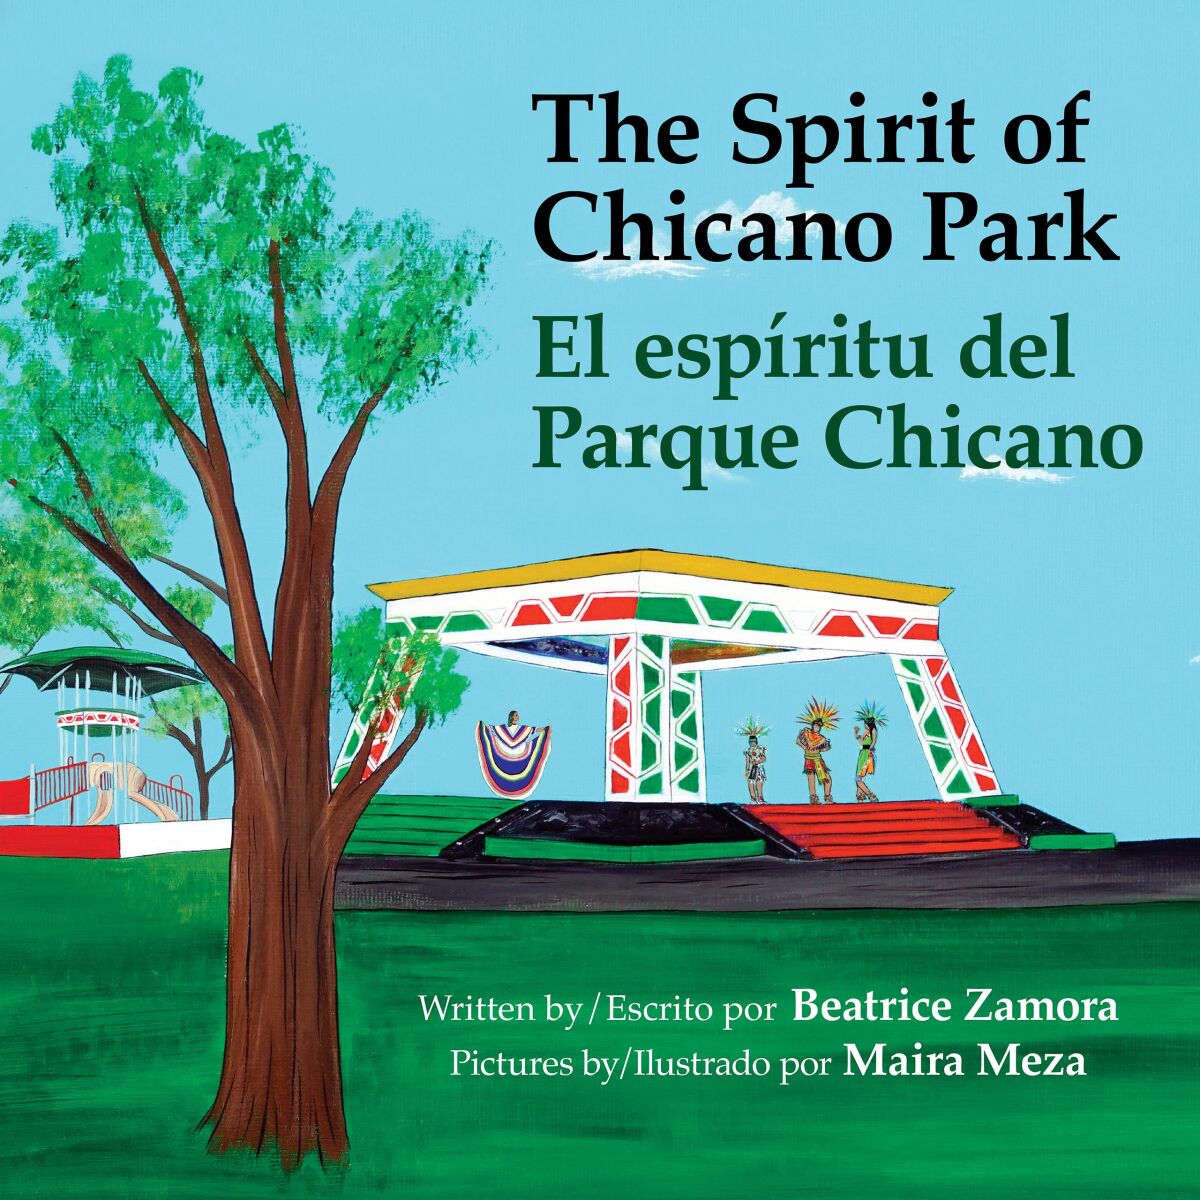 Cover of the new book "The Spirit of Chicano Park / El espíritu del Parque Chicano."